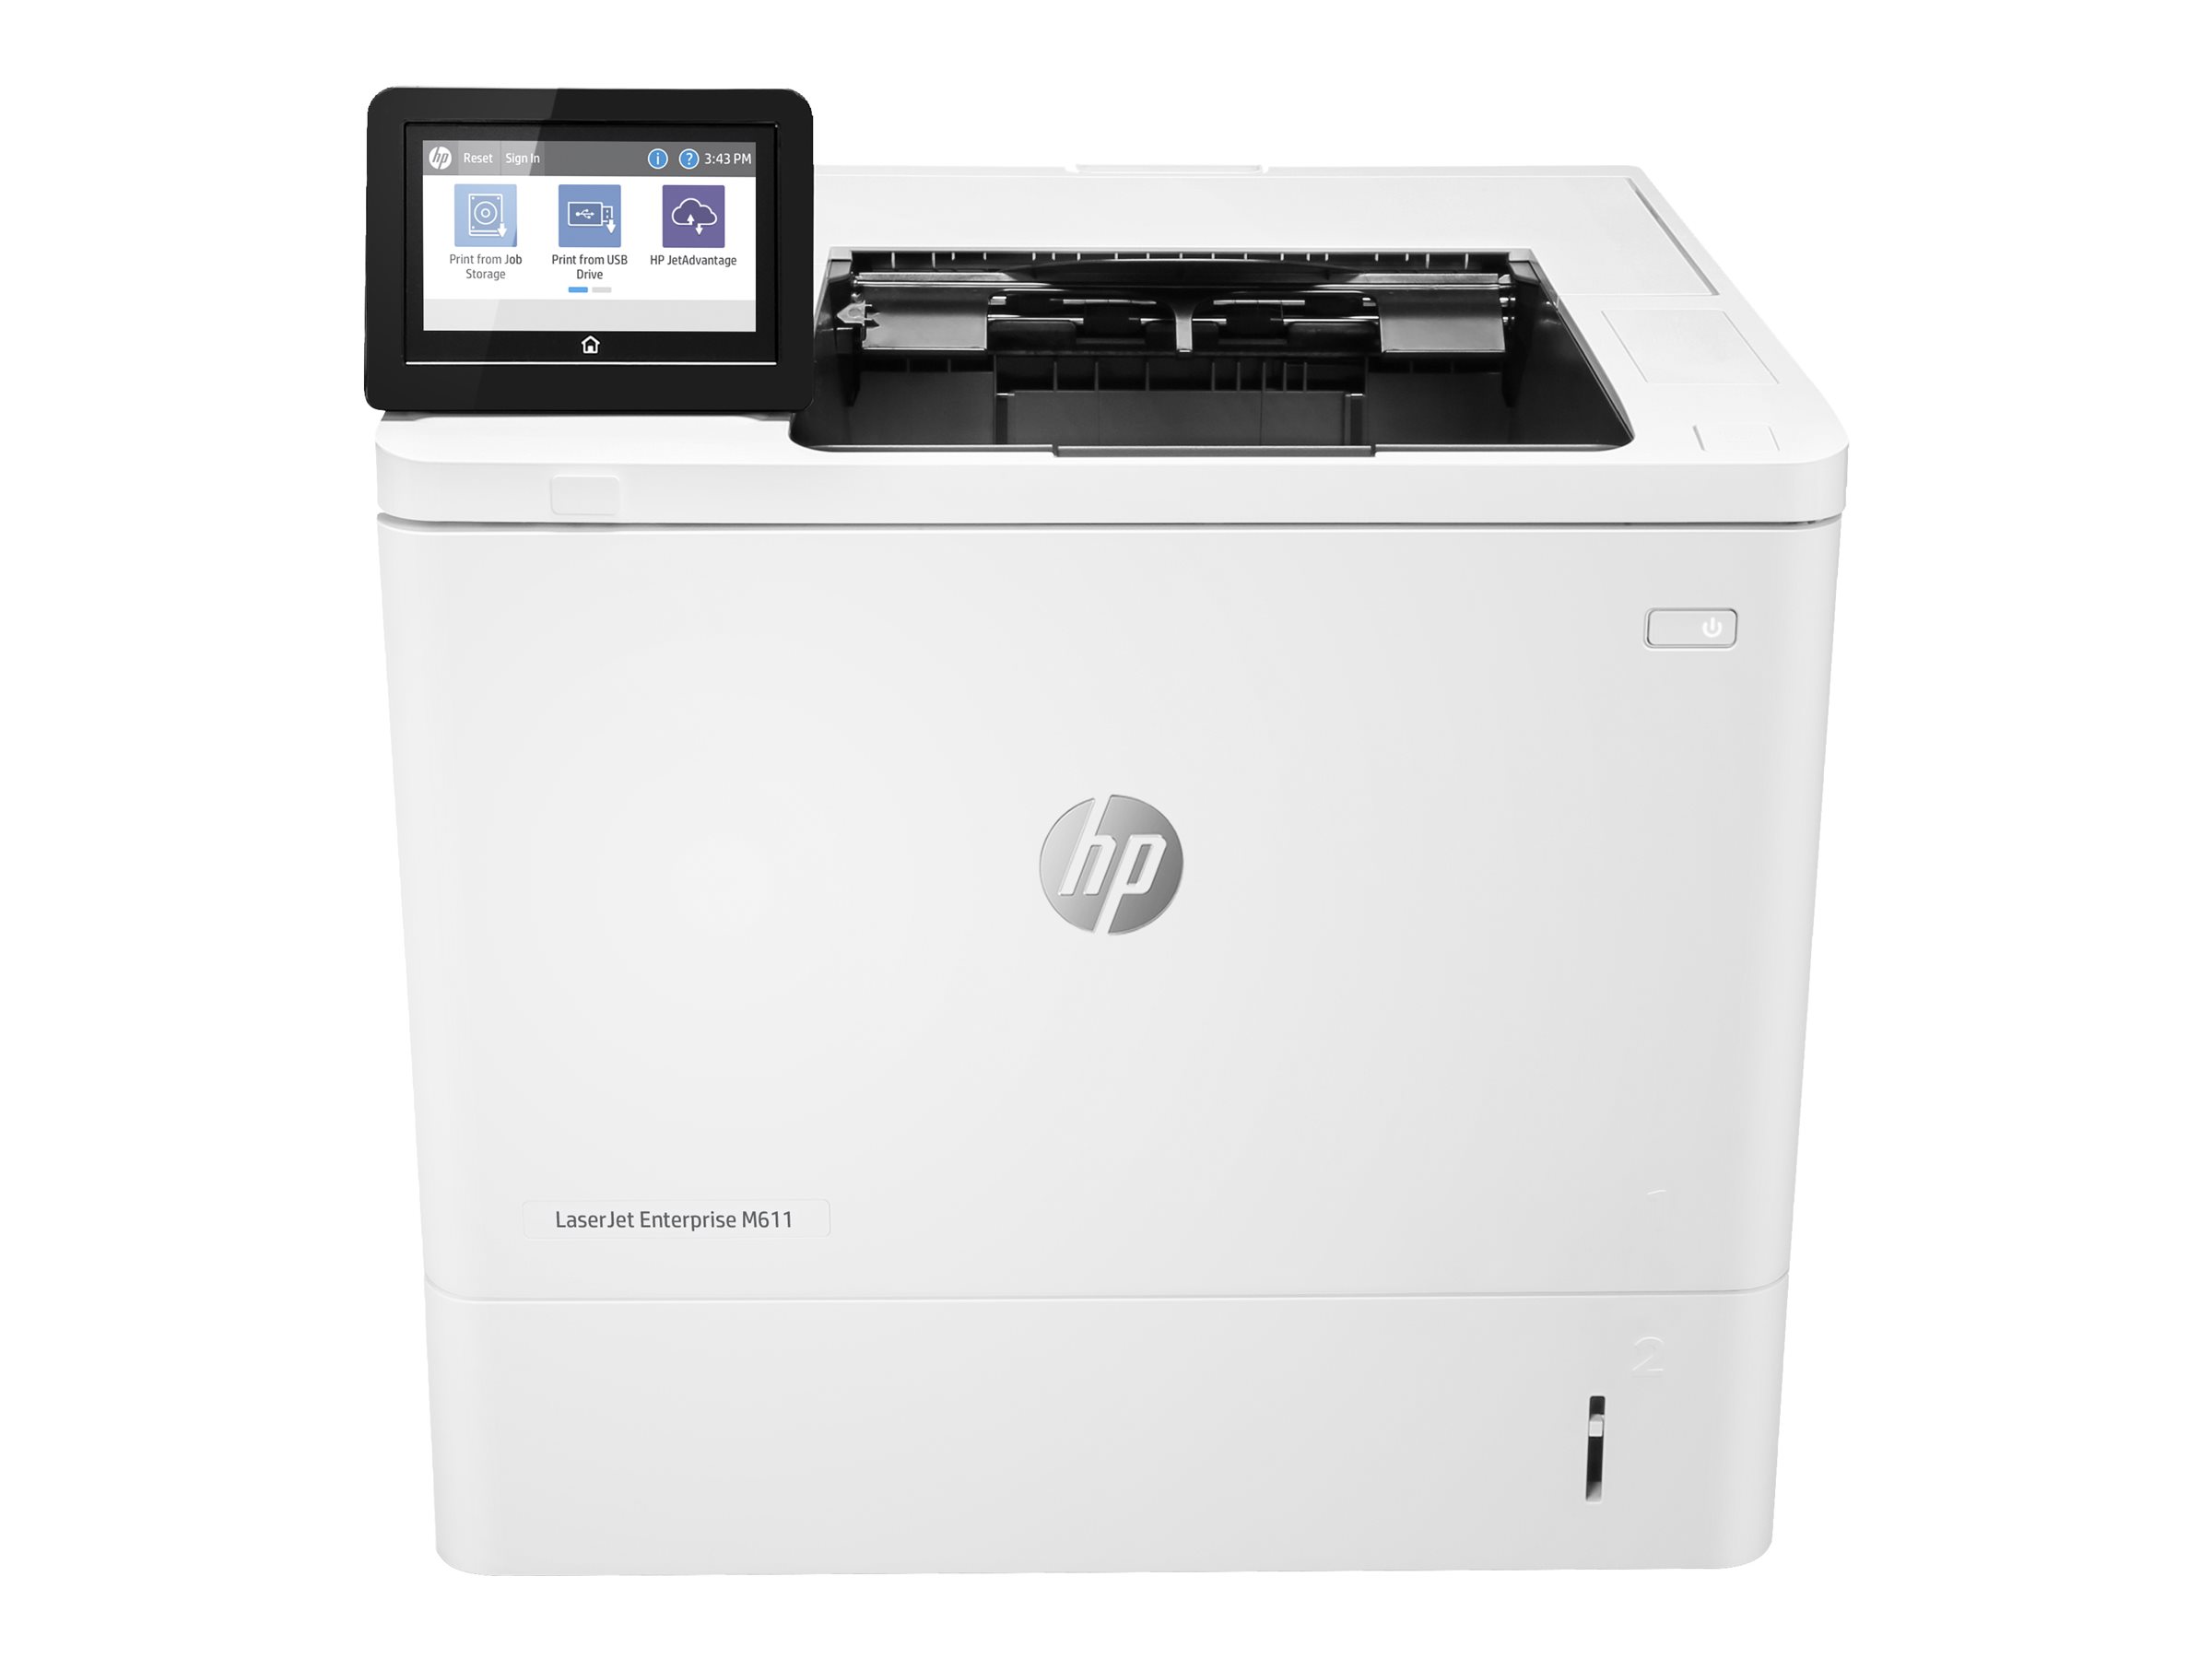 HP LaserJet Enterprise M611dn - Imprimante - Noir et blanc - Recto-verso - laser - A4/Legal - 1200 x 1200 ppp - jusqu'à 61 ppm - capacité : 650 feuilles - USB 2.0, Gigabit LAN, hôte USB 2.0 - 7PS84A#B19 - Imprimantes laser monochromes